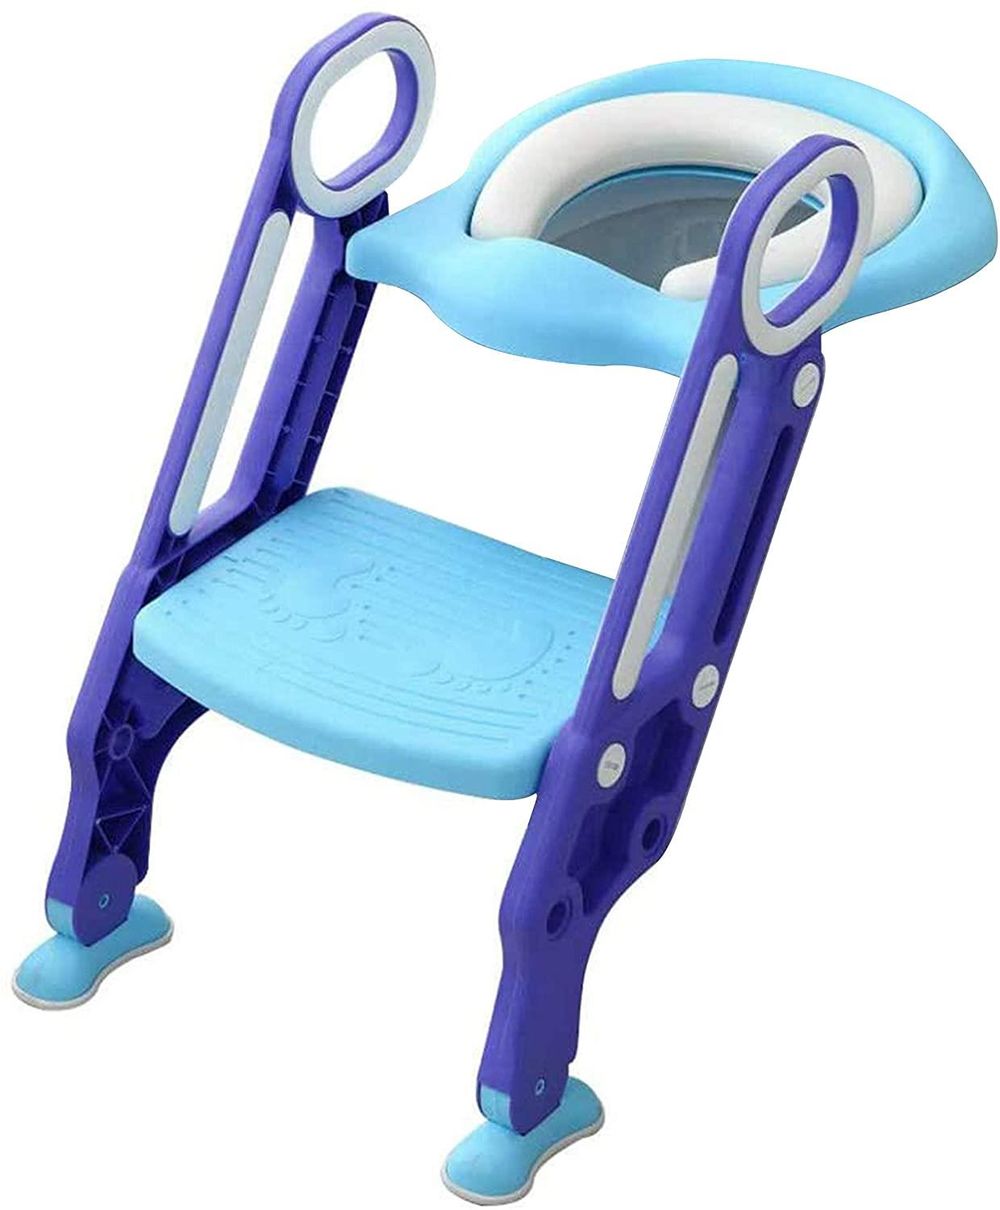 Toddler Toilet Training Seat Ladder Blue & Purple